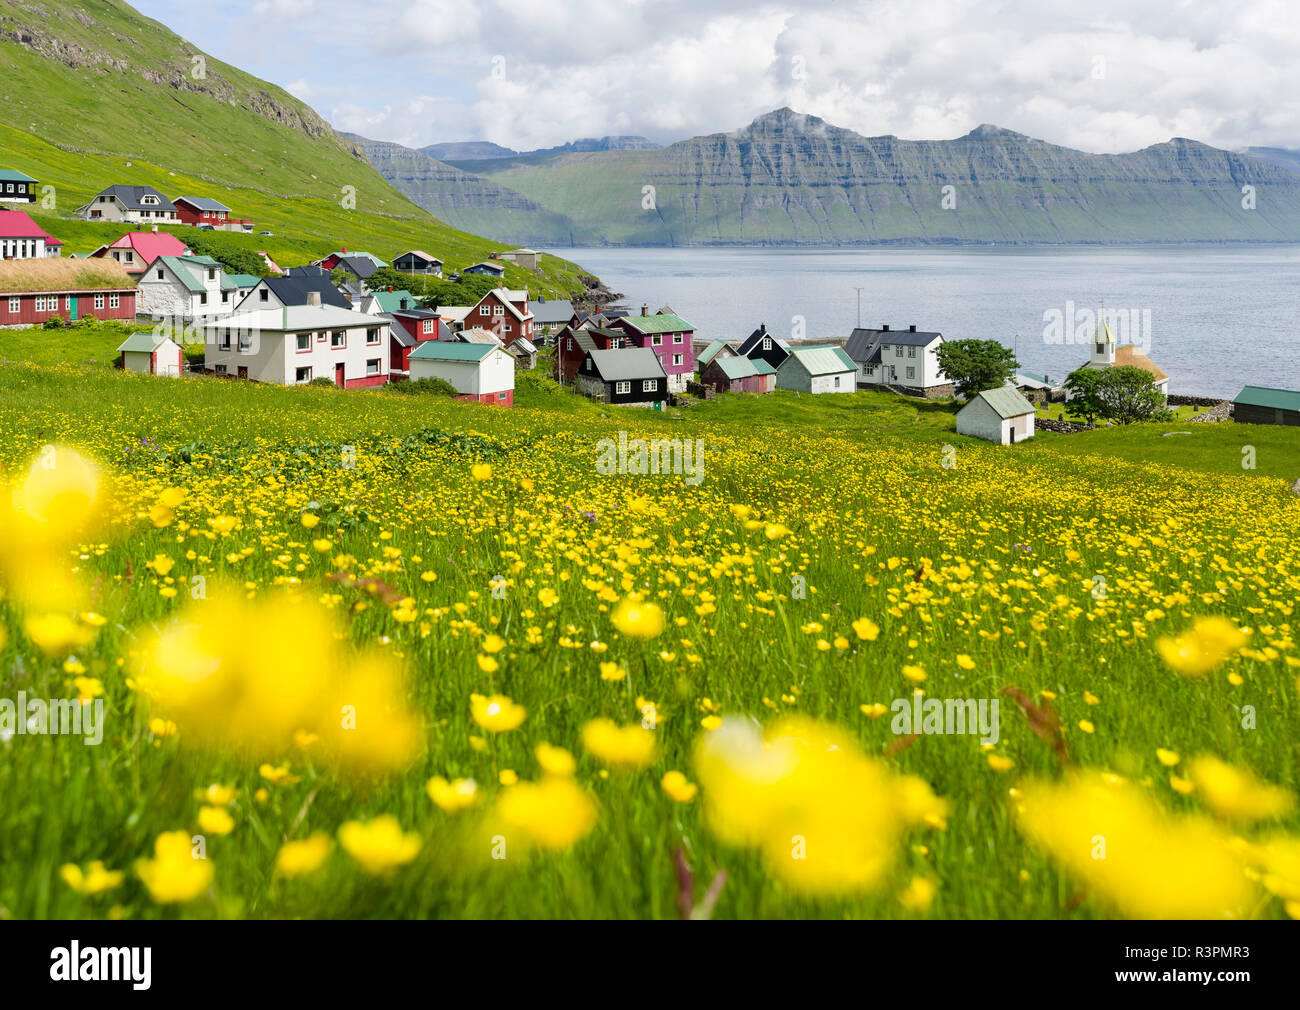 Dorf Oyndarfjordur, im Hintergrund die Berge der Insel Kalsoy. Nordeuropa : Dänemark Stockfoto